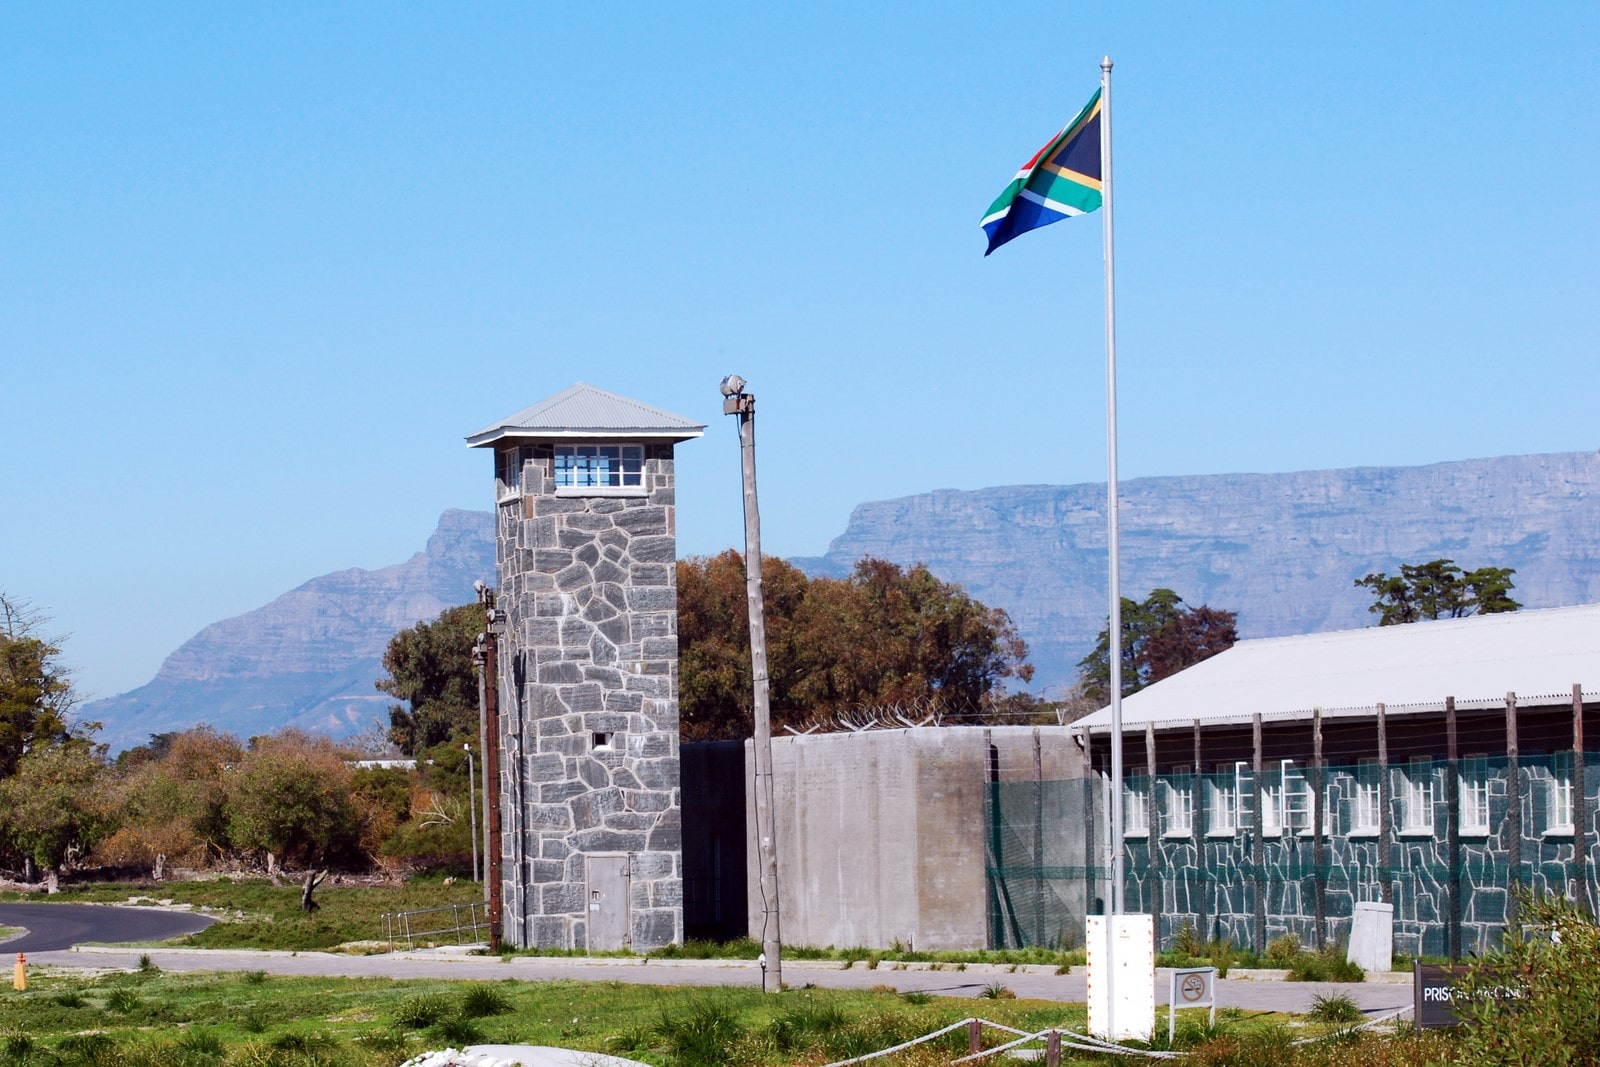 Cape Town, Robben Island Prison